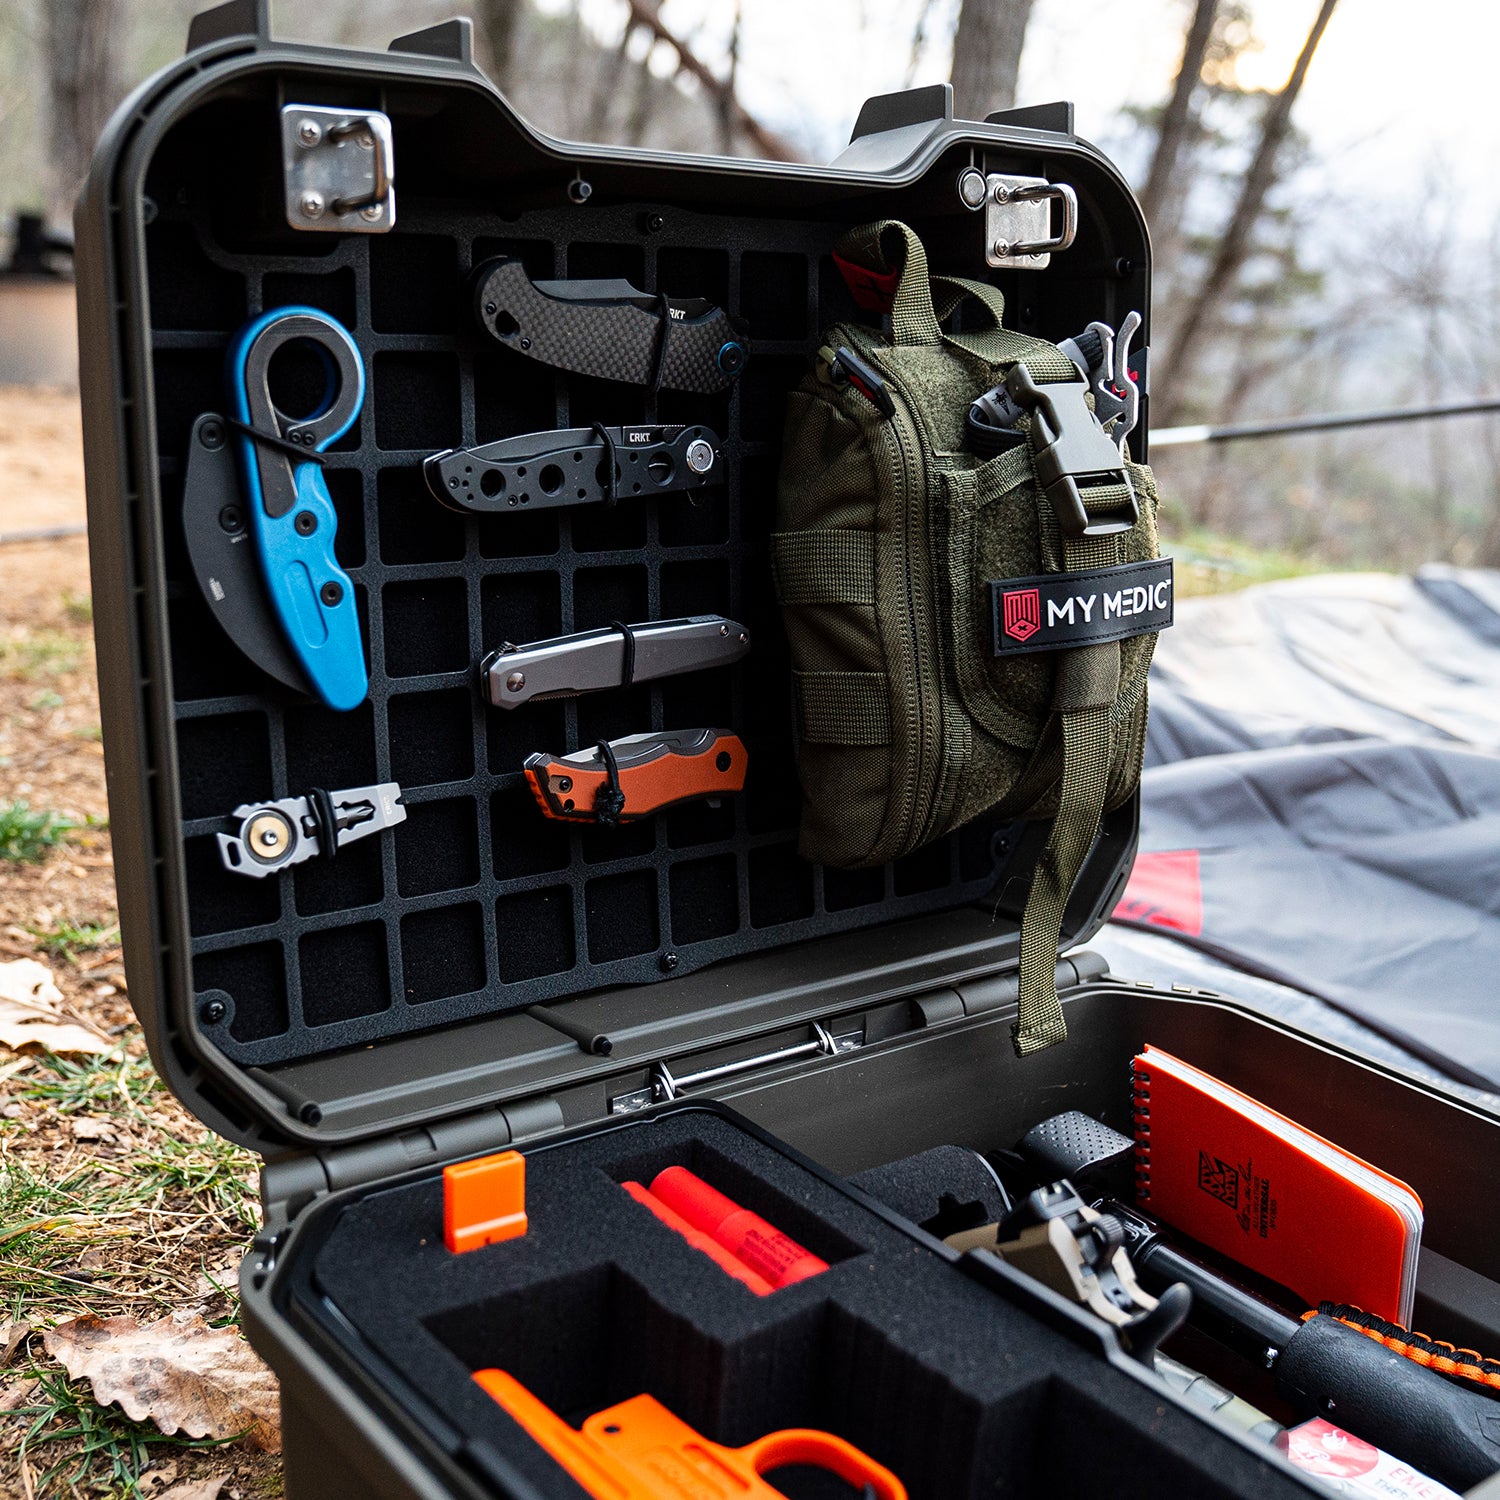 Vaultek LifePod XT3i High Capacity Weather Resistant Firearm Case Tactical Model